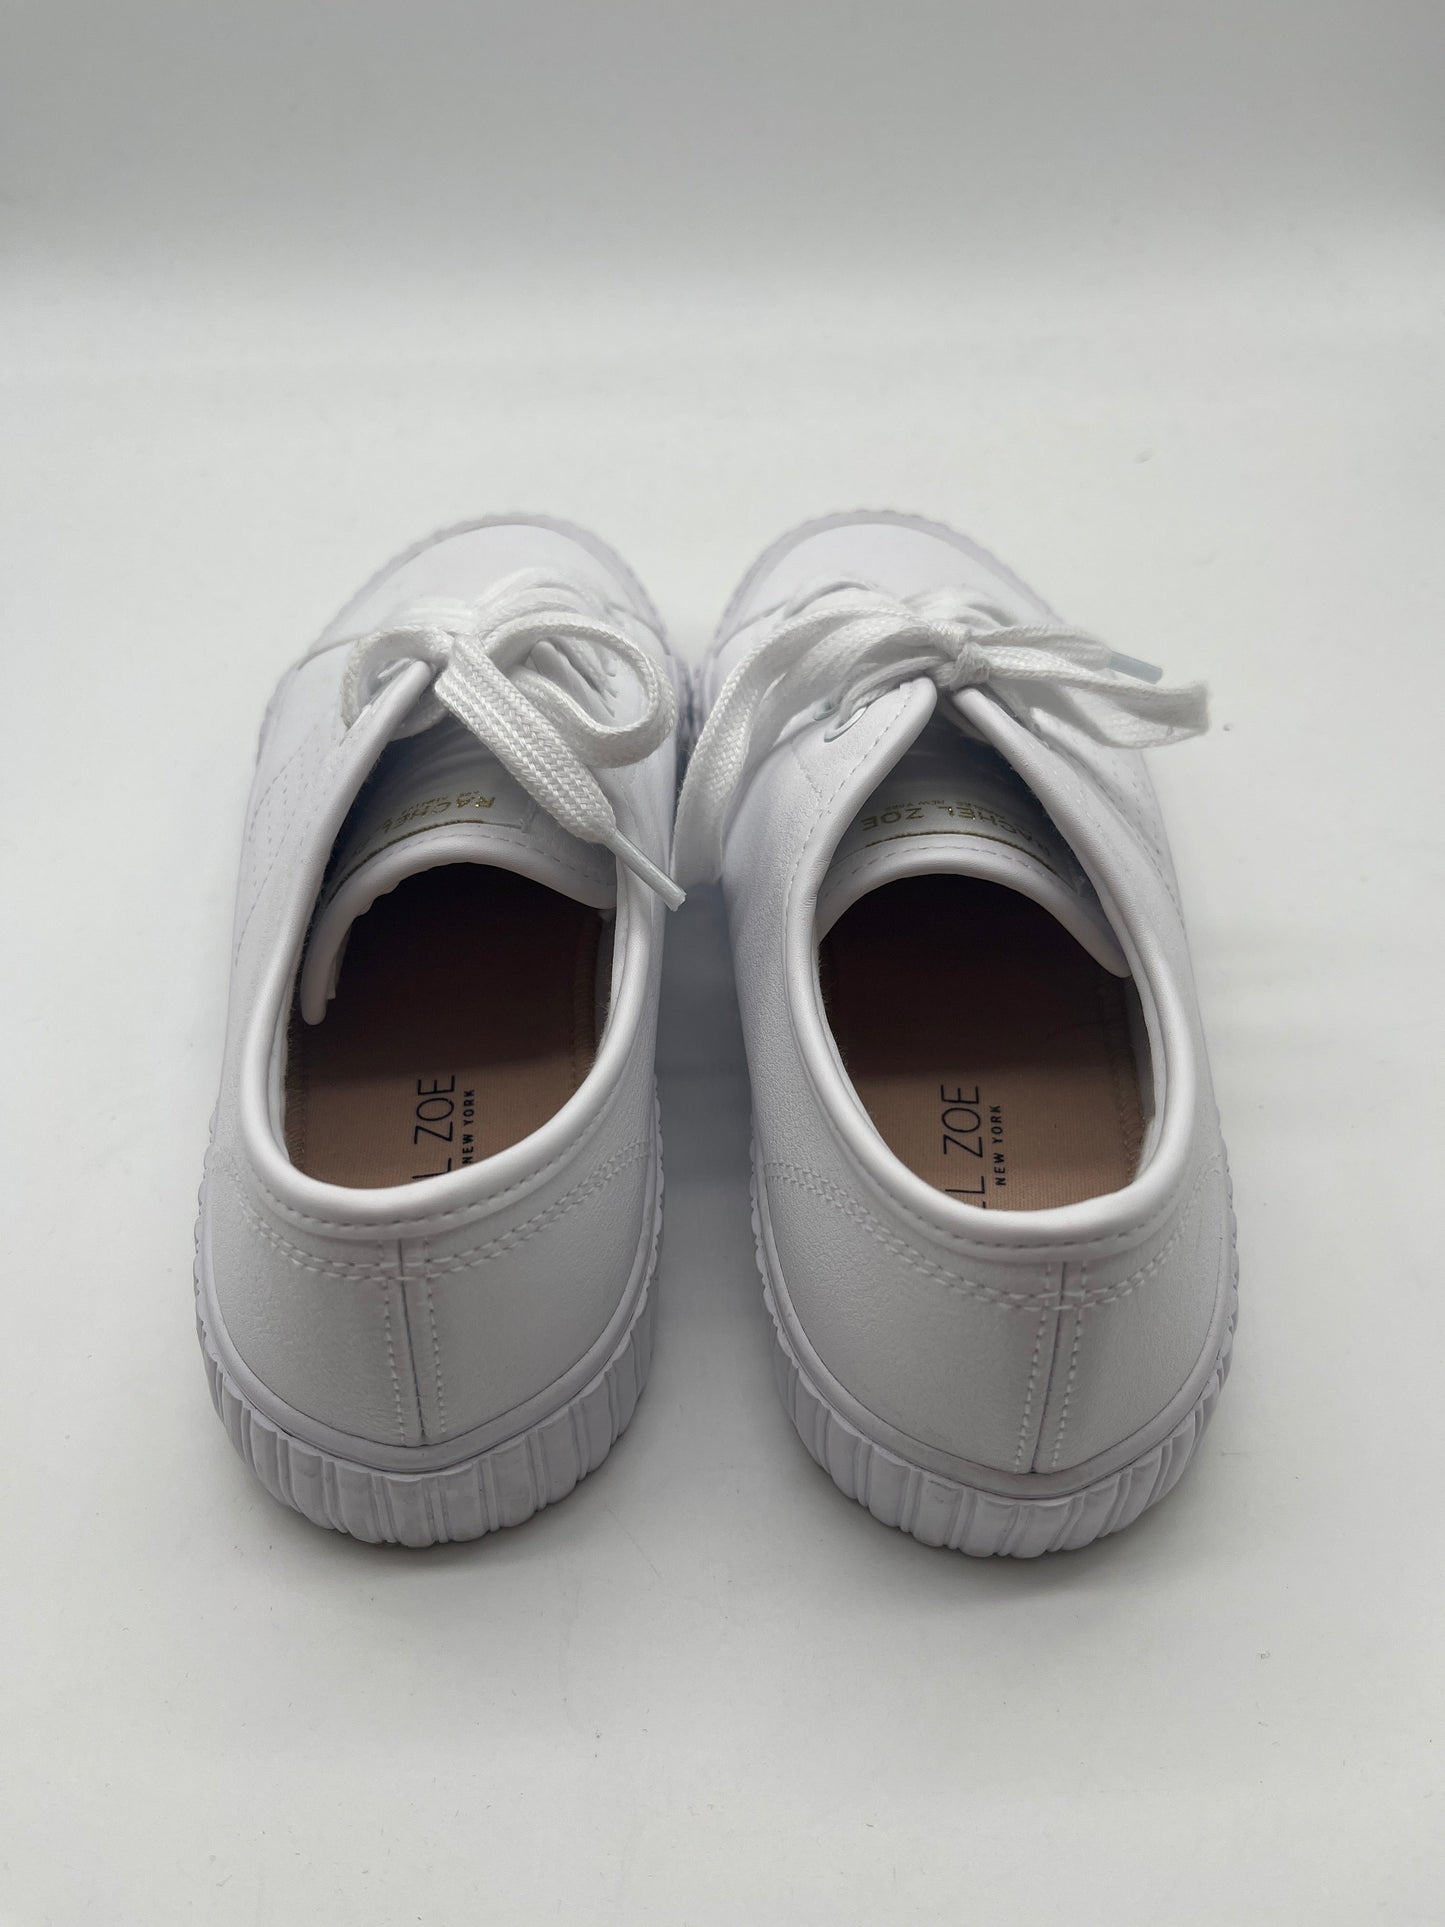 White Shoes Sneakers Rachel Zoe, Size 8